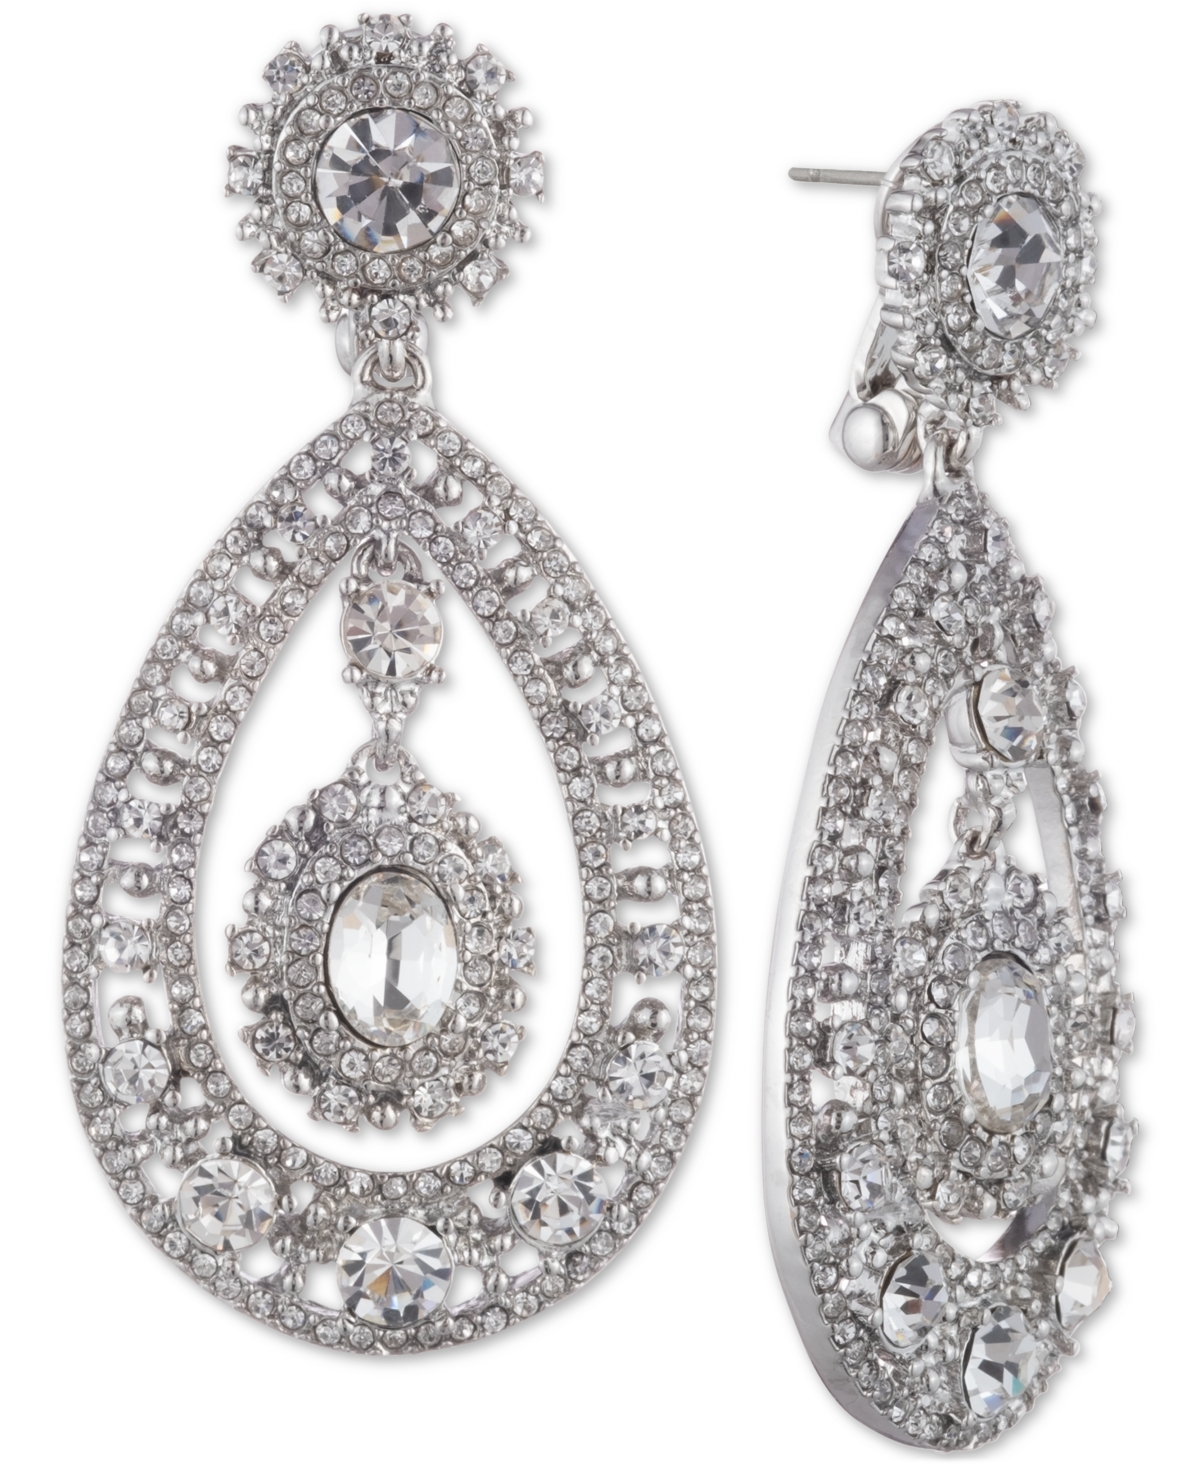 Crystal Filigree Chandelier Earrings - Silver